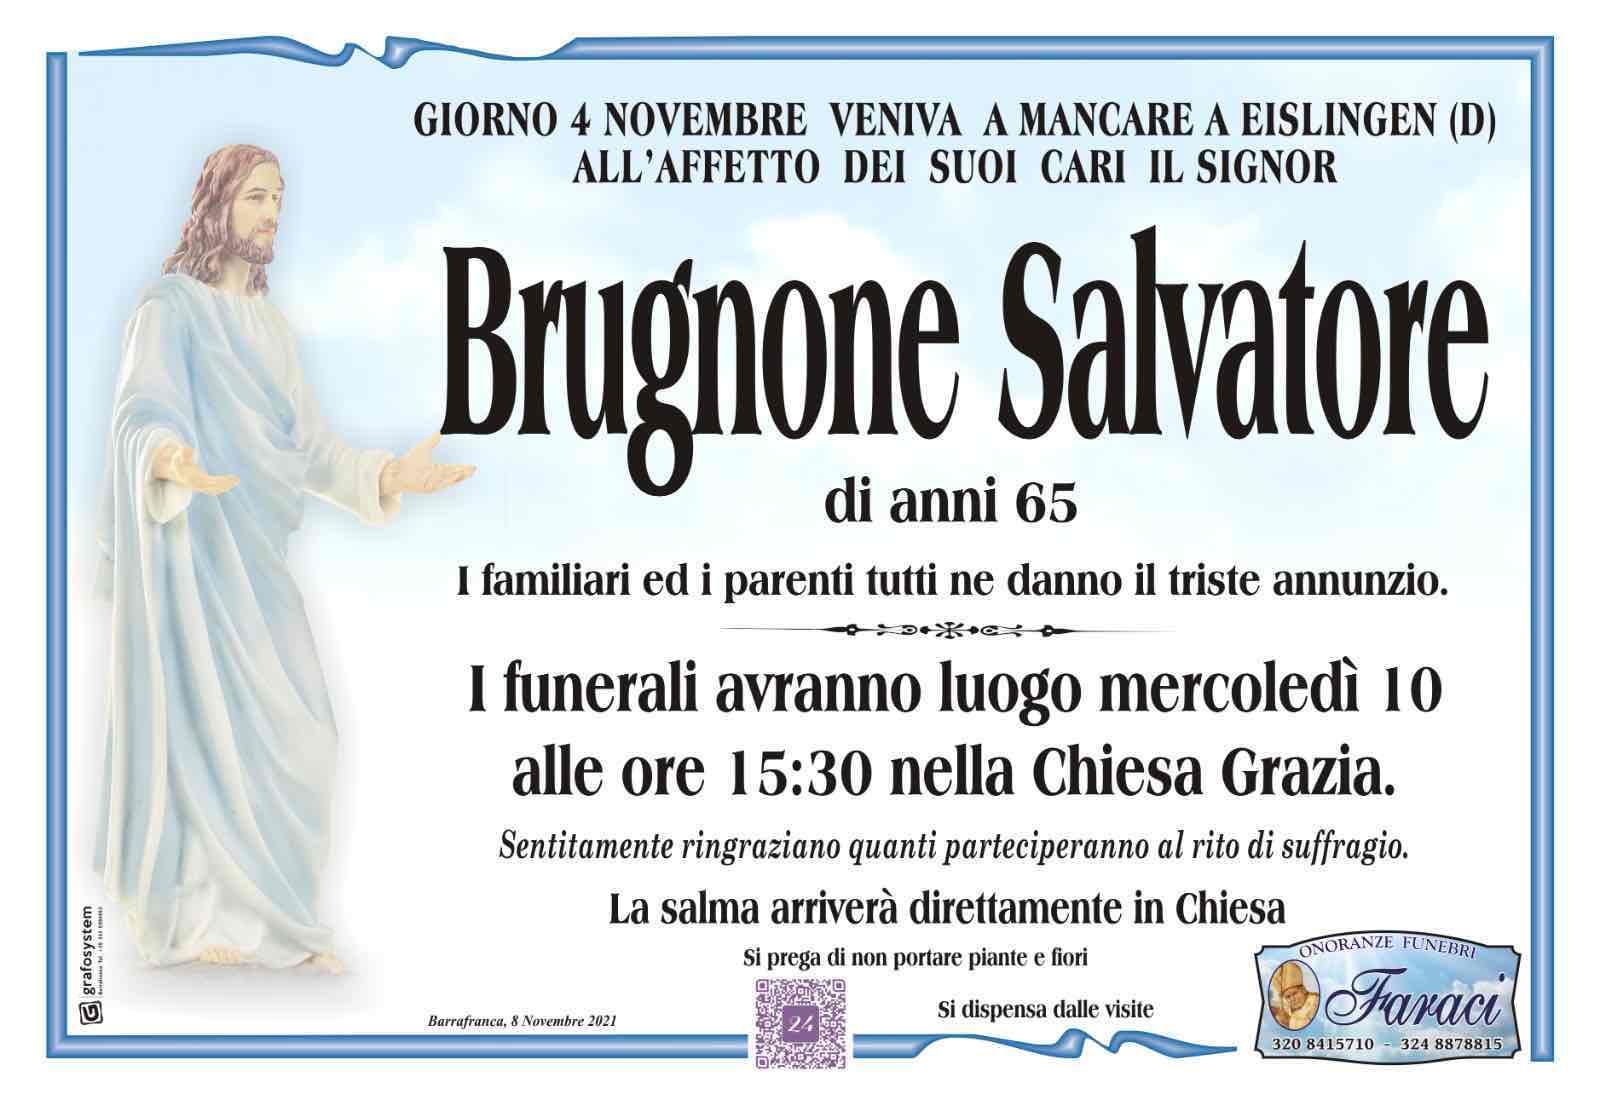 Salvatore Brugnone